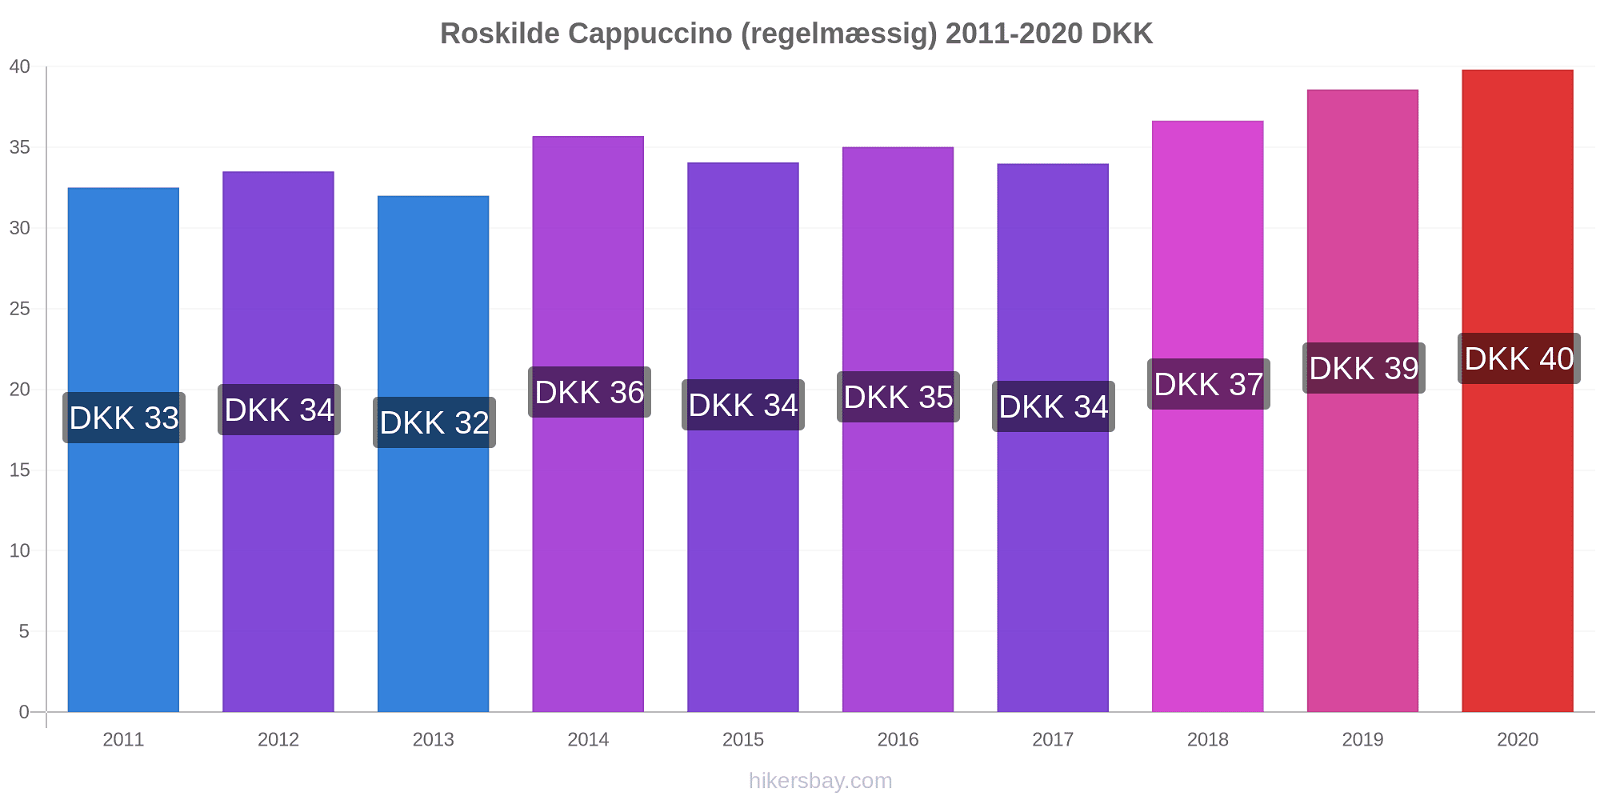 Roskilde prisændringer Cappuccino (regelmæssig) hikersbay.com